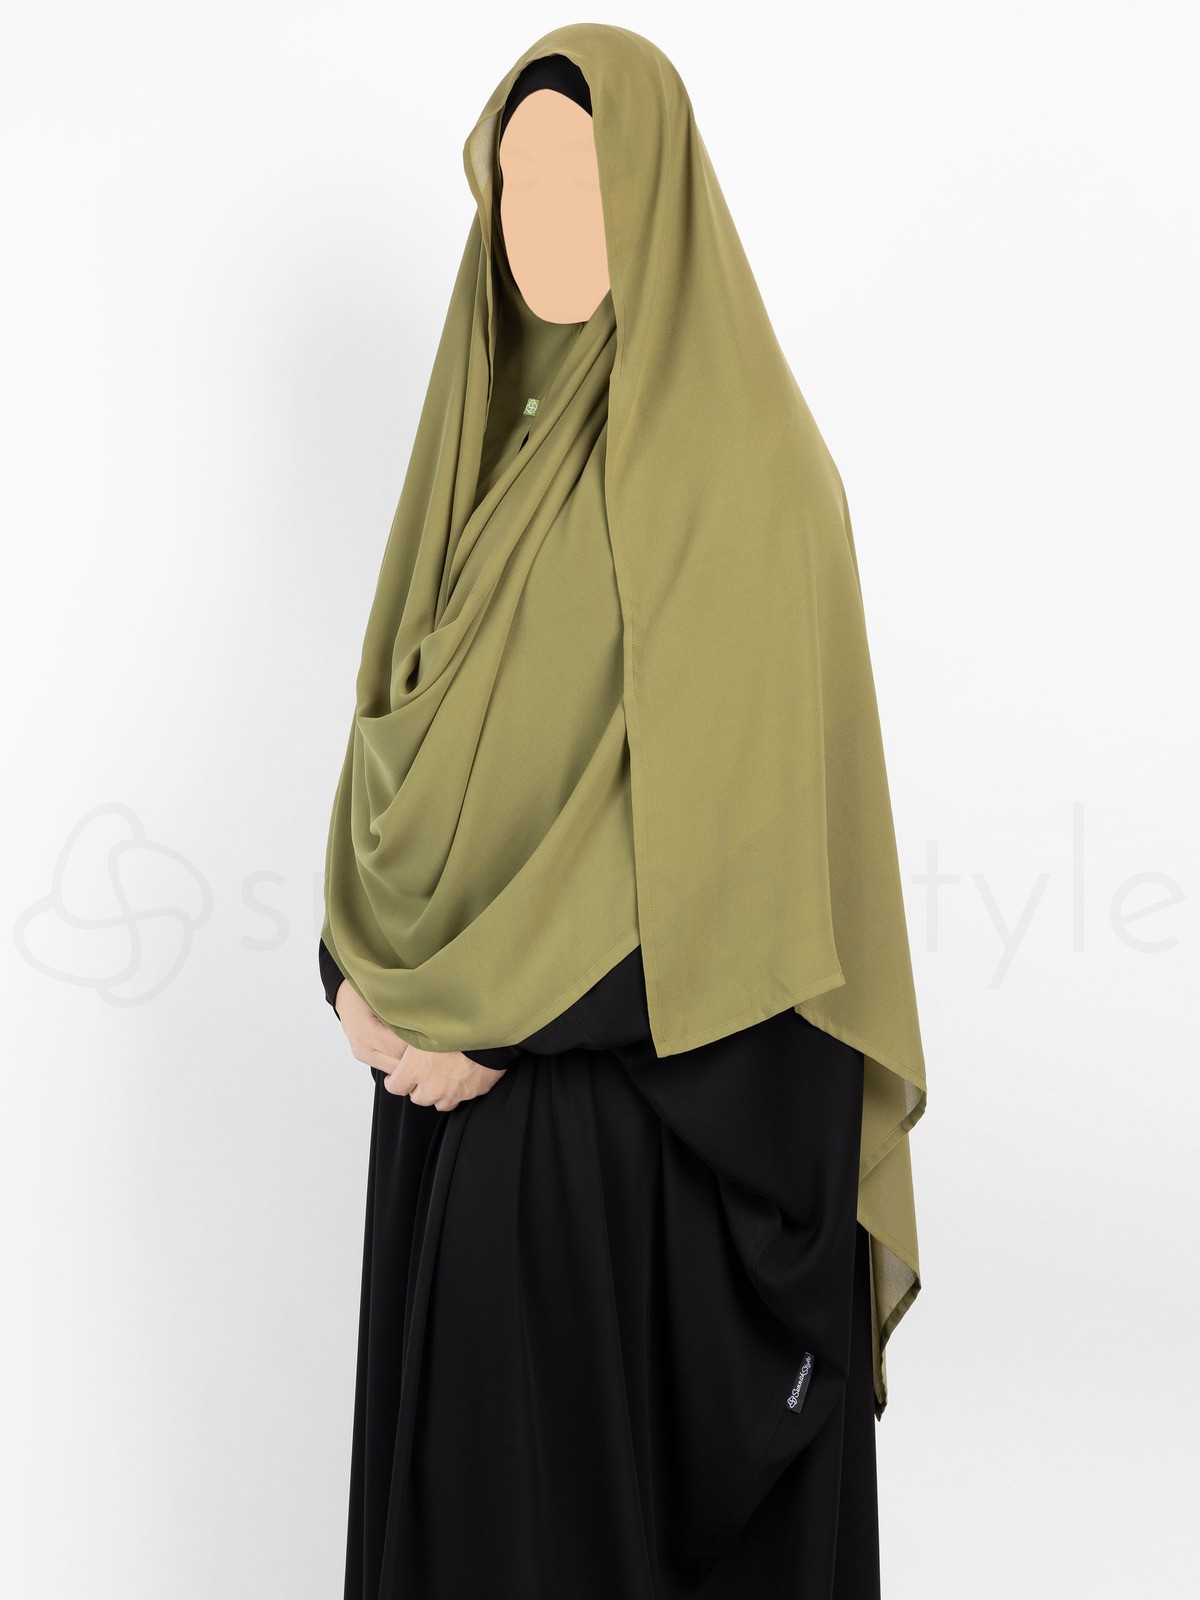 Sunnah Style - Hooded Wrap Hijab (Burgundy)